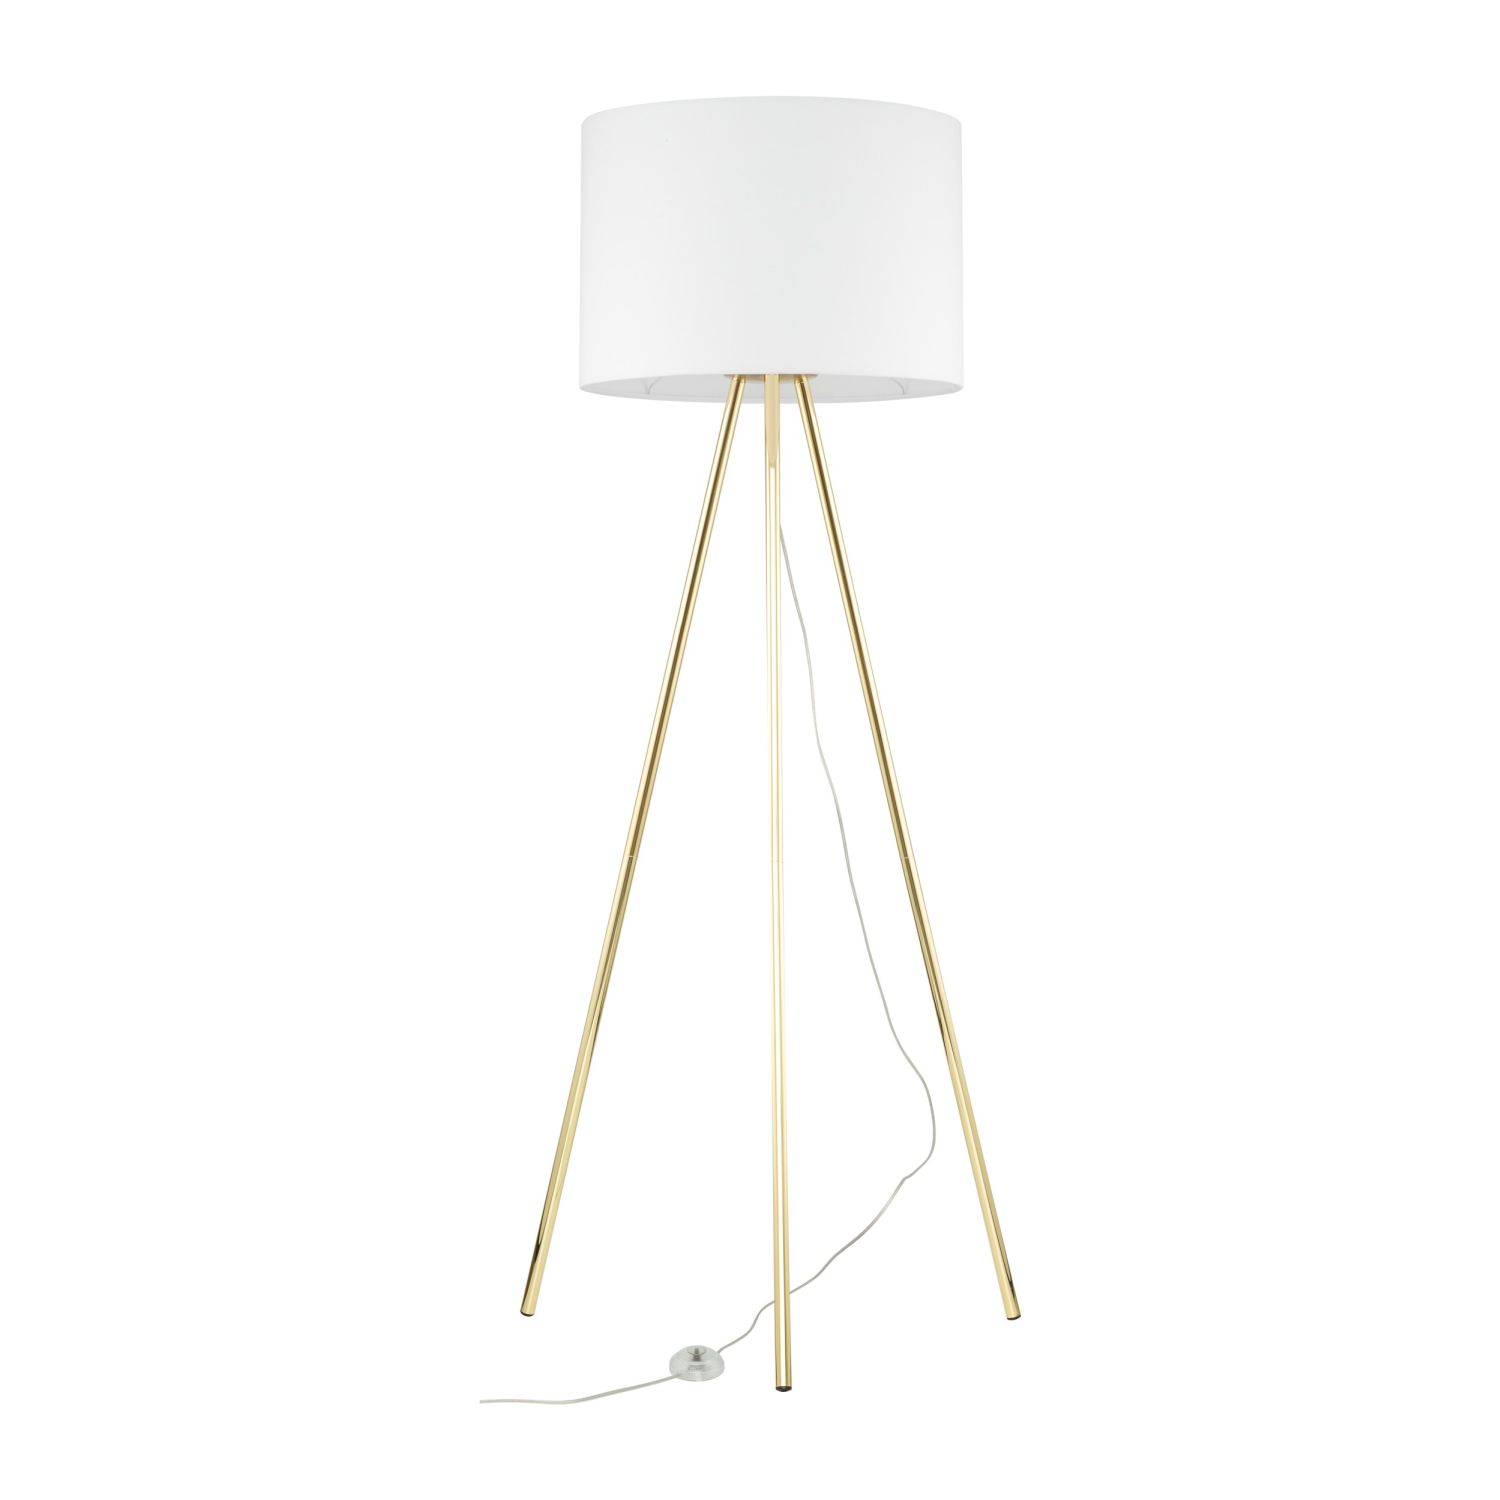 Stehlampe Wohnzimmer 160cm Metall Stoff E27 Gold Weiß Dreibein